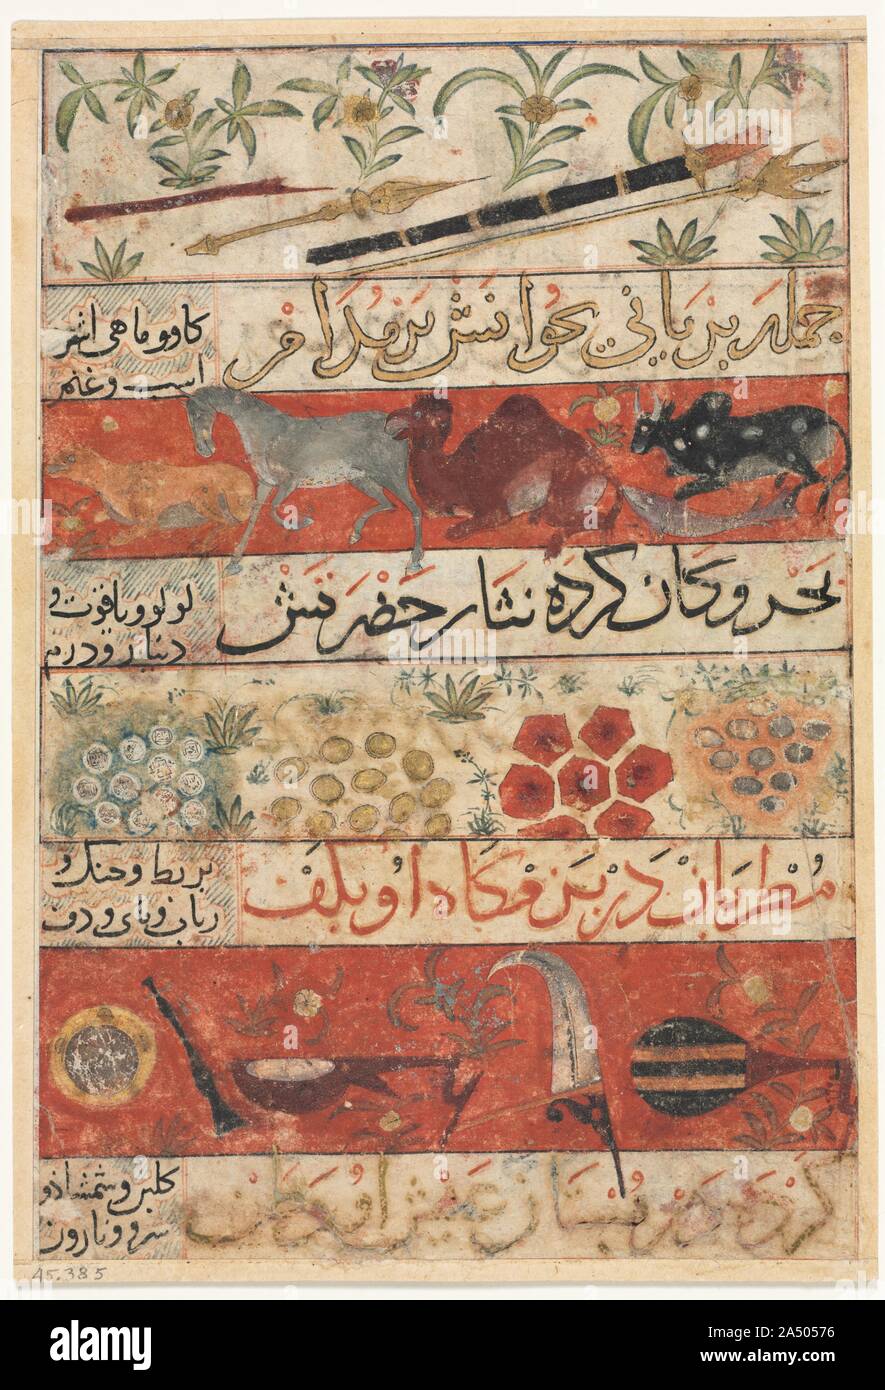 Animali, Pietre Preziose, monete e strumenti musicali (recto); Animali, uccelli e piante (verso) da un Munis al-Ahrar fi Daqaiq al-Ashar (uomini liberi il compagno per le sottigliezze di poesie) di Muhammad ibn Badr al-Din Jajarmi (attivo 1340s), c. 1341. Questa è una delle numerose pagine che sono state rimosse da un unico manoscritto di questo altrimenti lavoro sconosciuto, che porta un colophon affermando che esso è stato scritto dall'autore e "finito il Ramadan, 741" (febbraio 1341). Le illustrazioni su entrambi i lati comprendono vari animali, alberi e oggetti come armi, strumenti musicali, e gioiello Foto Stock